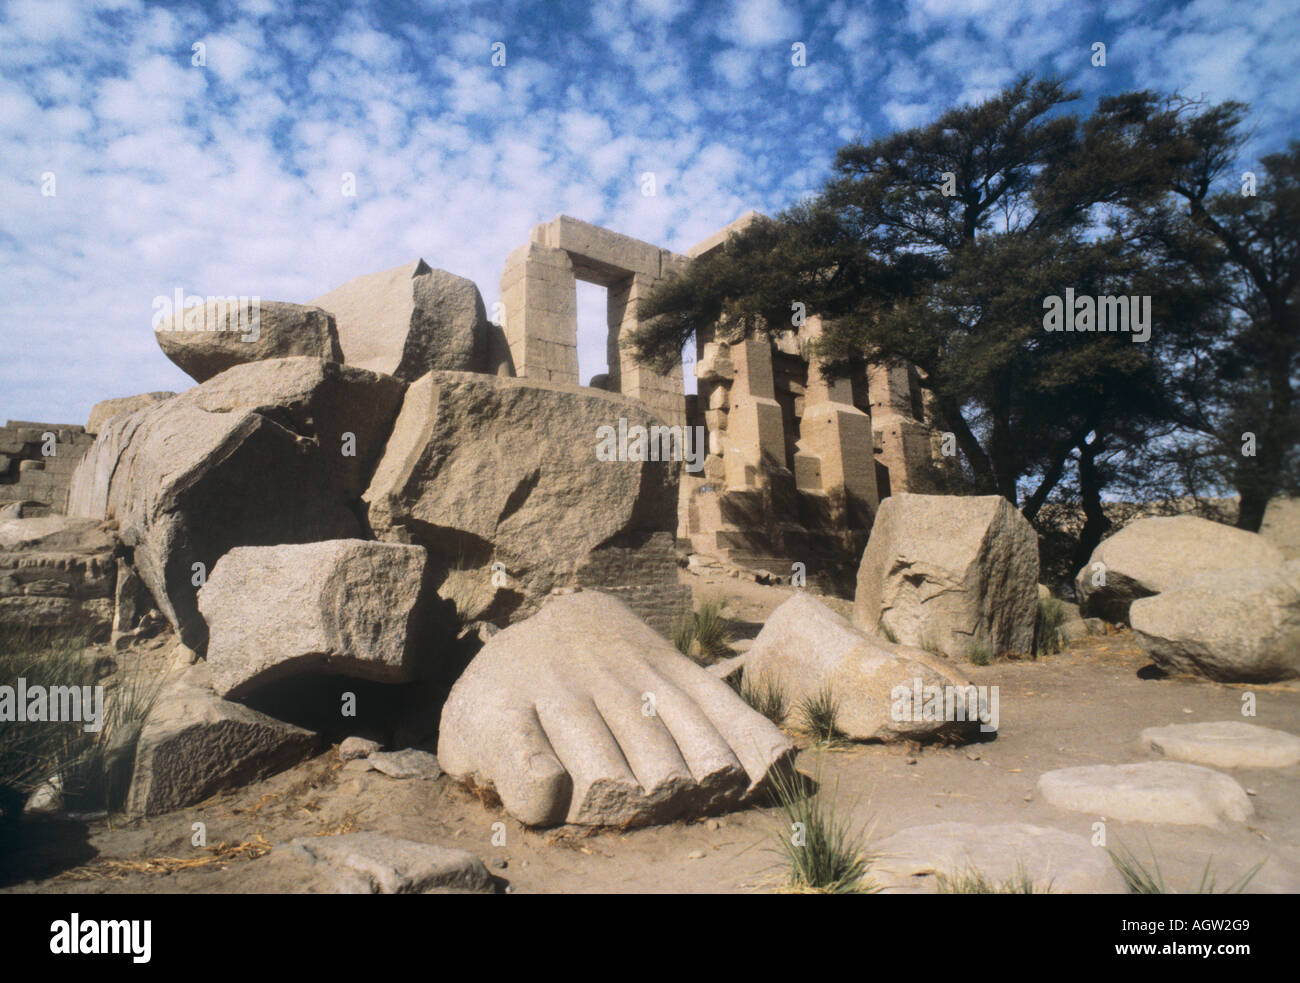 L'Egitto, la Ramasseum, in Cisgiordania. I resti delle statue giganti in entrata. Il soggetto di Shelley epico Ozymandias. Foto Stock